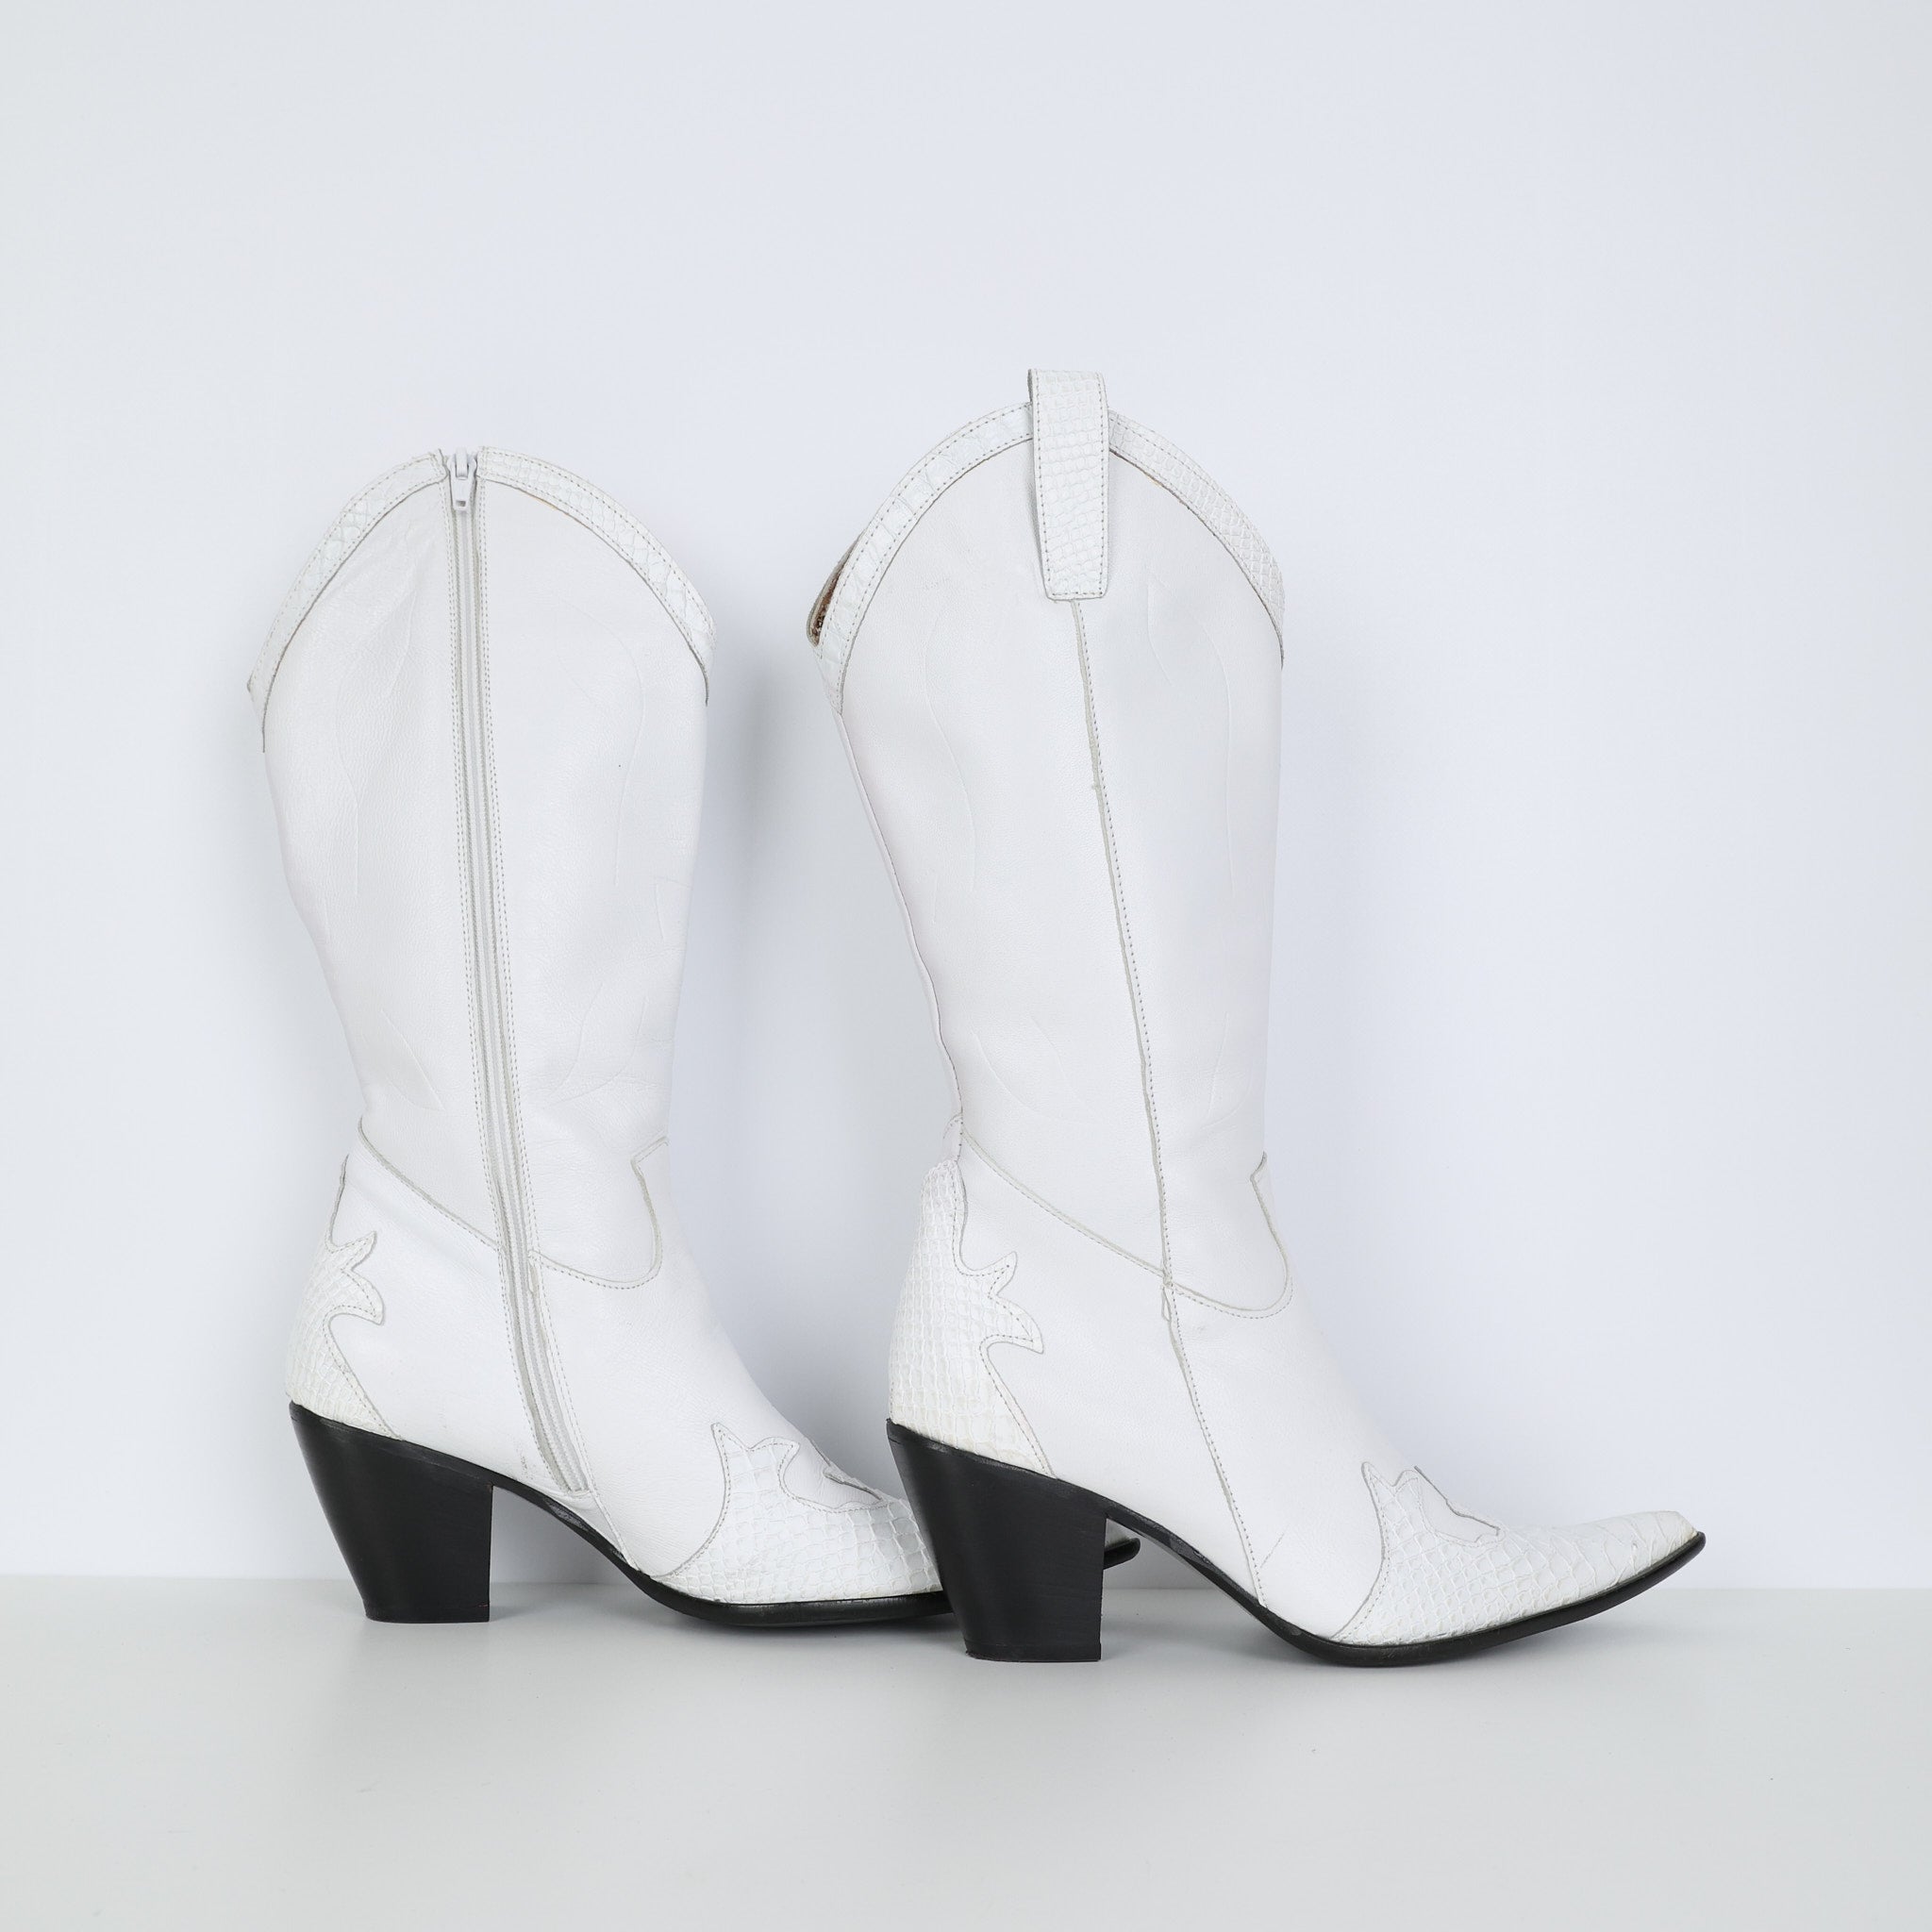 Boots, Shoe Size 41